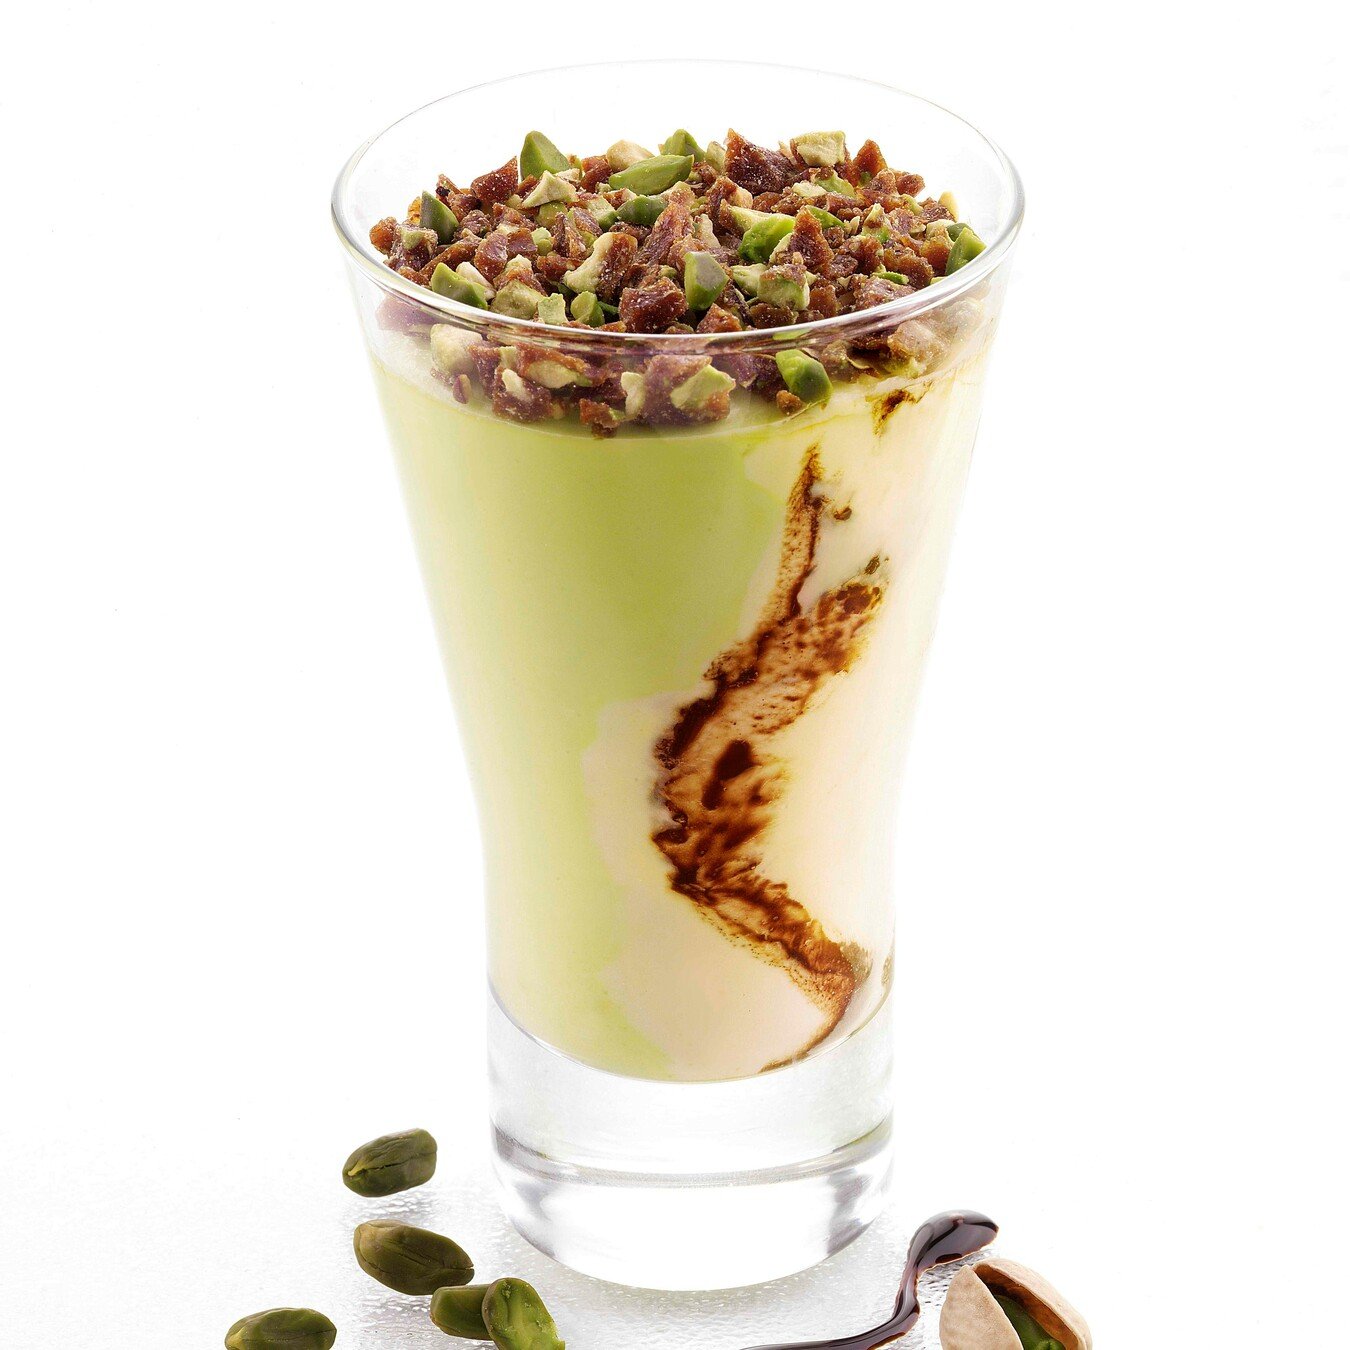 Coppa Gelato Crema e Pistacchio Bindi: un'elegante coppa in vetro con gelato alla crema e al pistacchio variegato al cioccolato, decorata con pistacchi pralinati.